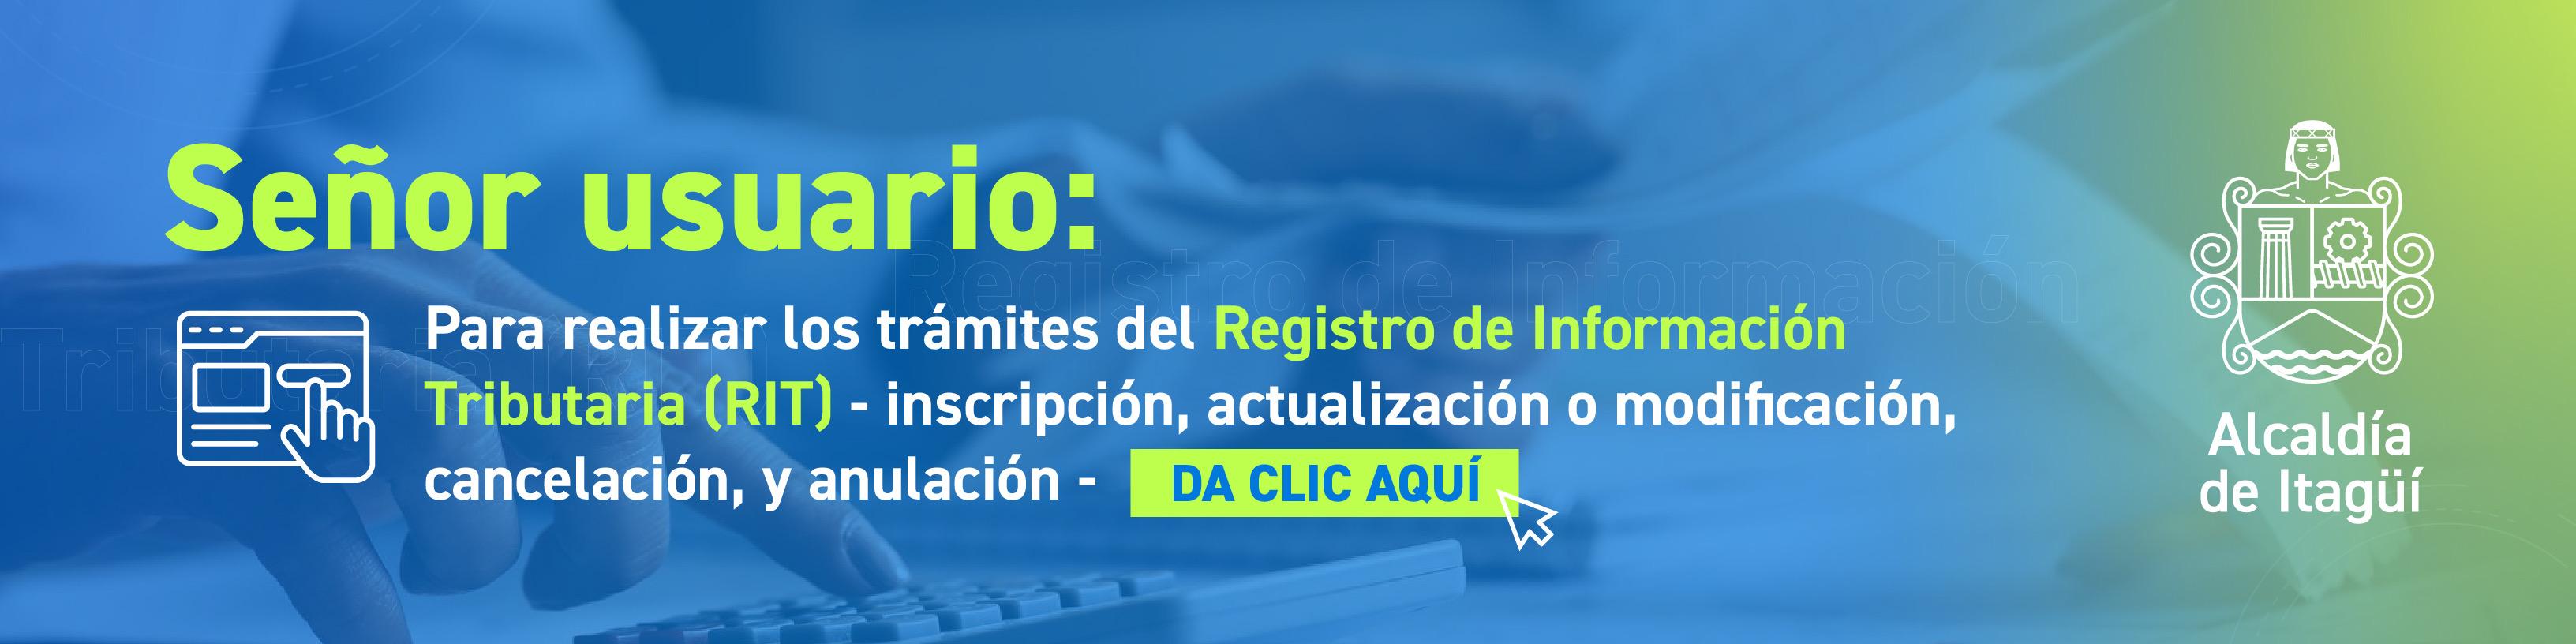 Señor usuario:
Para realizar los trámites del Registro de Información Tributaria (RIT) - inscripción, actualización o modificación, cancelación, y anulación - DA CLIC AQUÍ
Alcaldía
de Itagüí